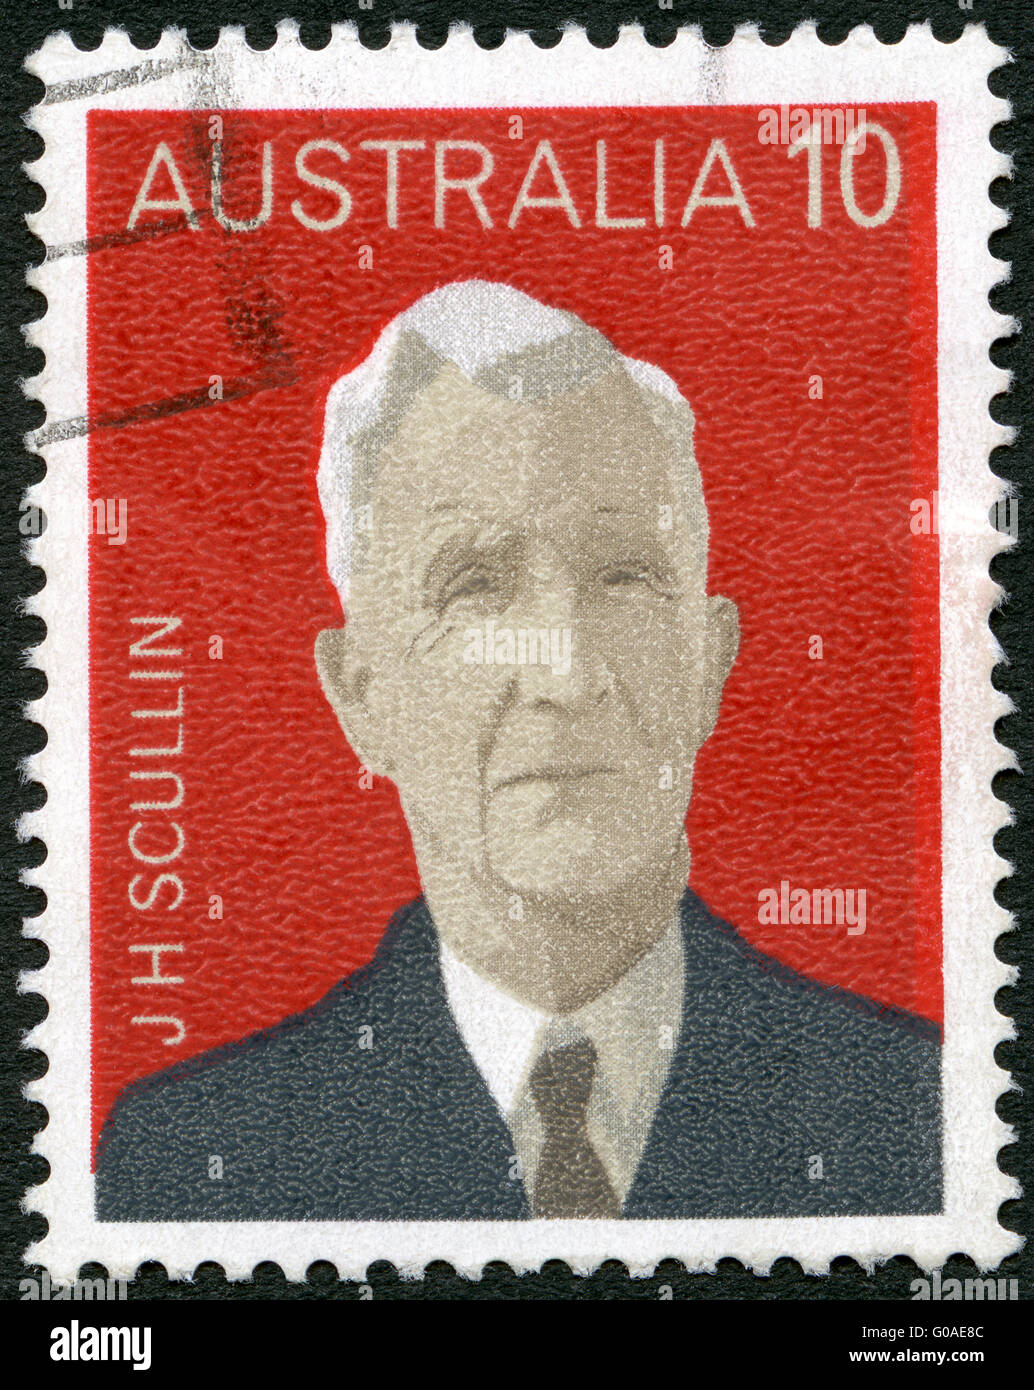 Australie - 1975 : montre James Henry Scullin (série administration hameaux communes limitrophes, premiers ministres australiens Banque D'Images